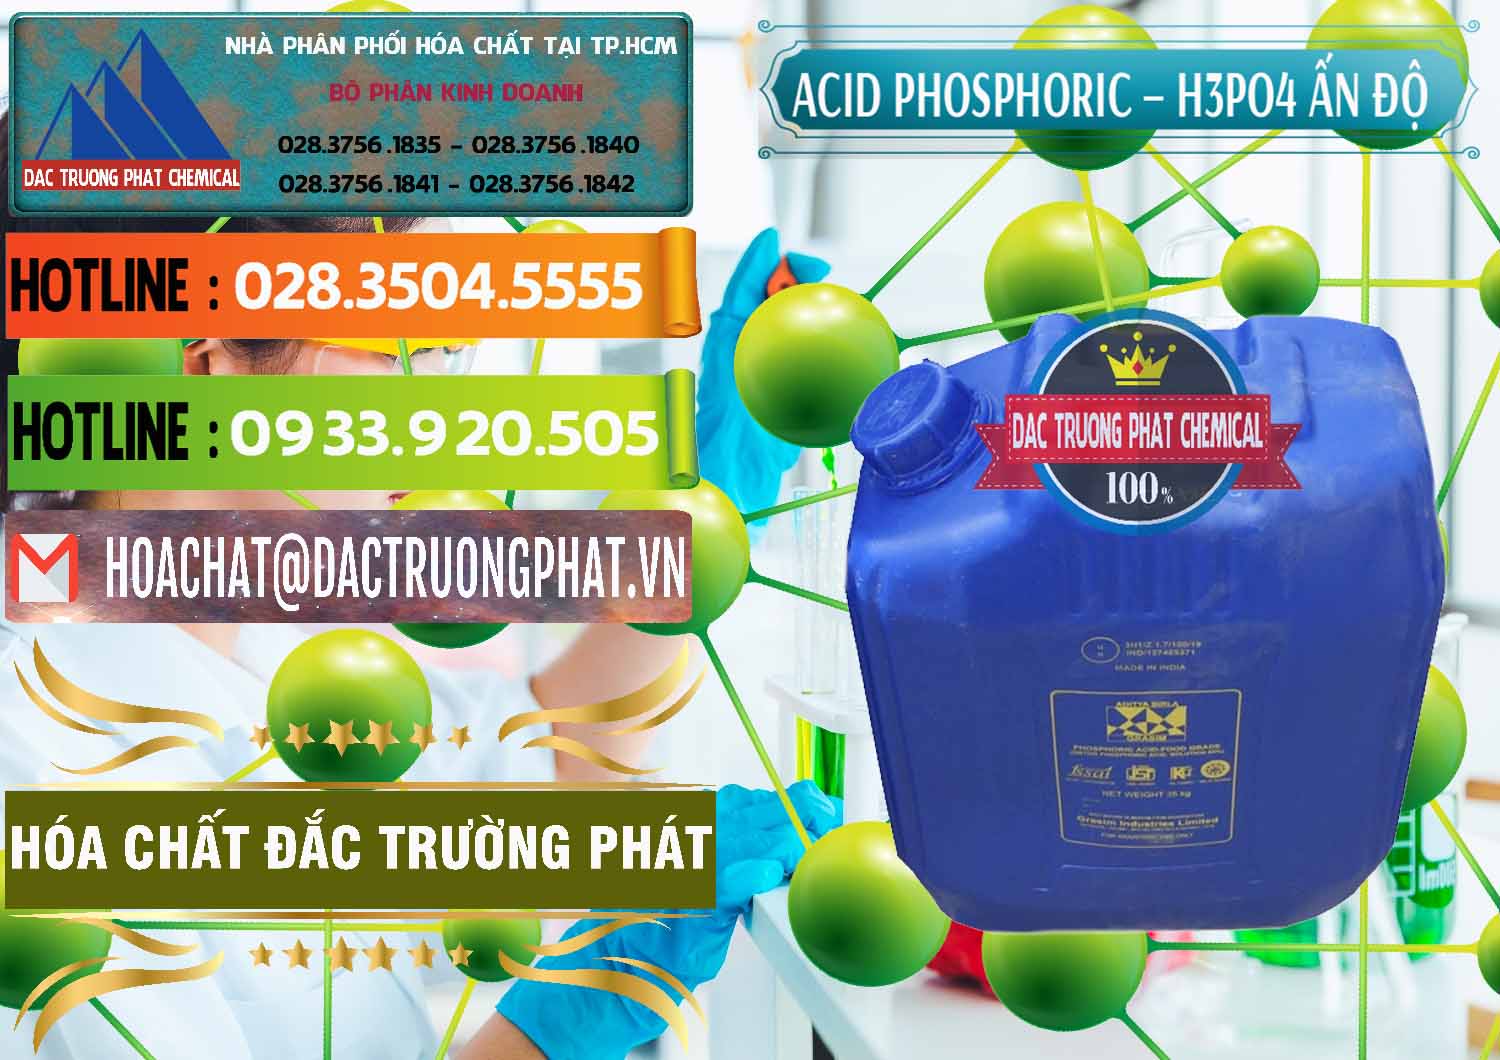 Nơi bán Axit Phosphoric H3PO4 85% Ấn Độ - 0350 - Phân phối _ bán hóa chất tại TP.HCM - cungcaphoachat.com.vn